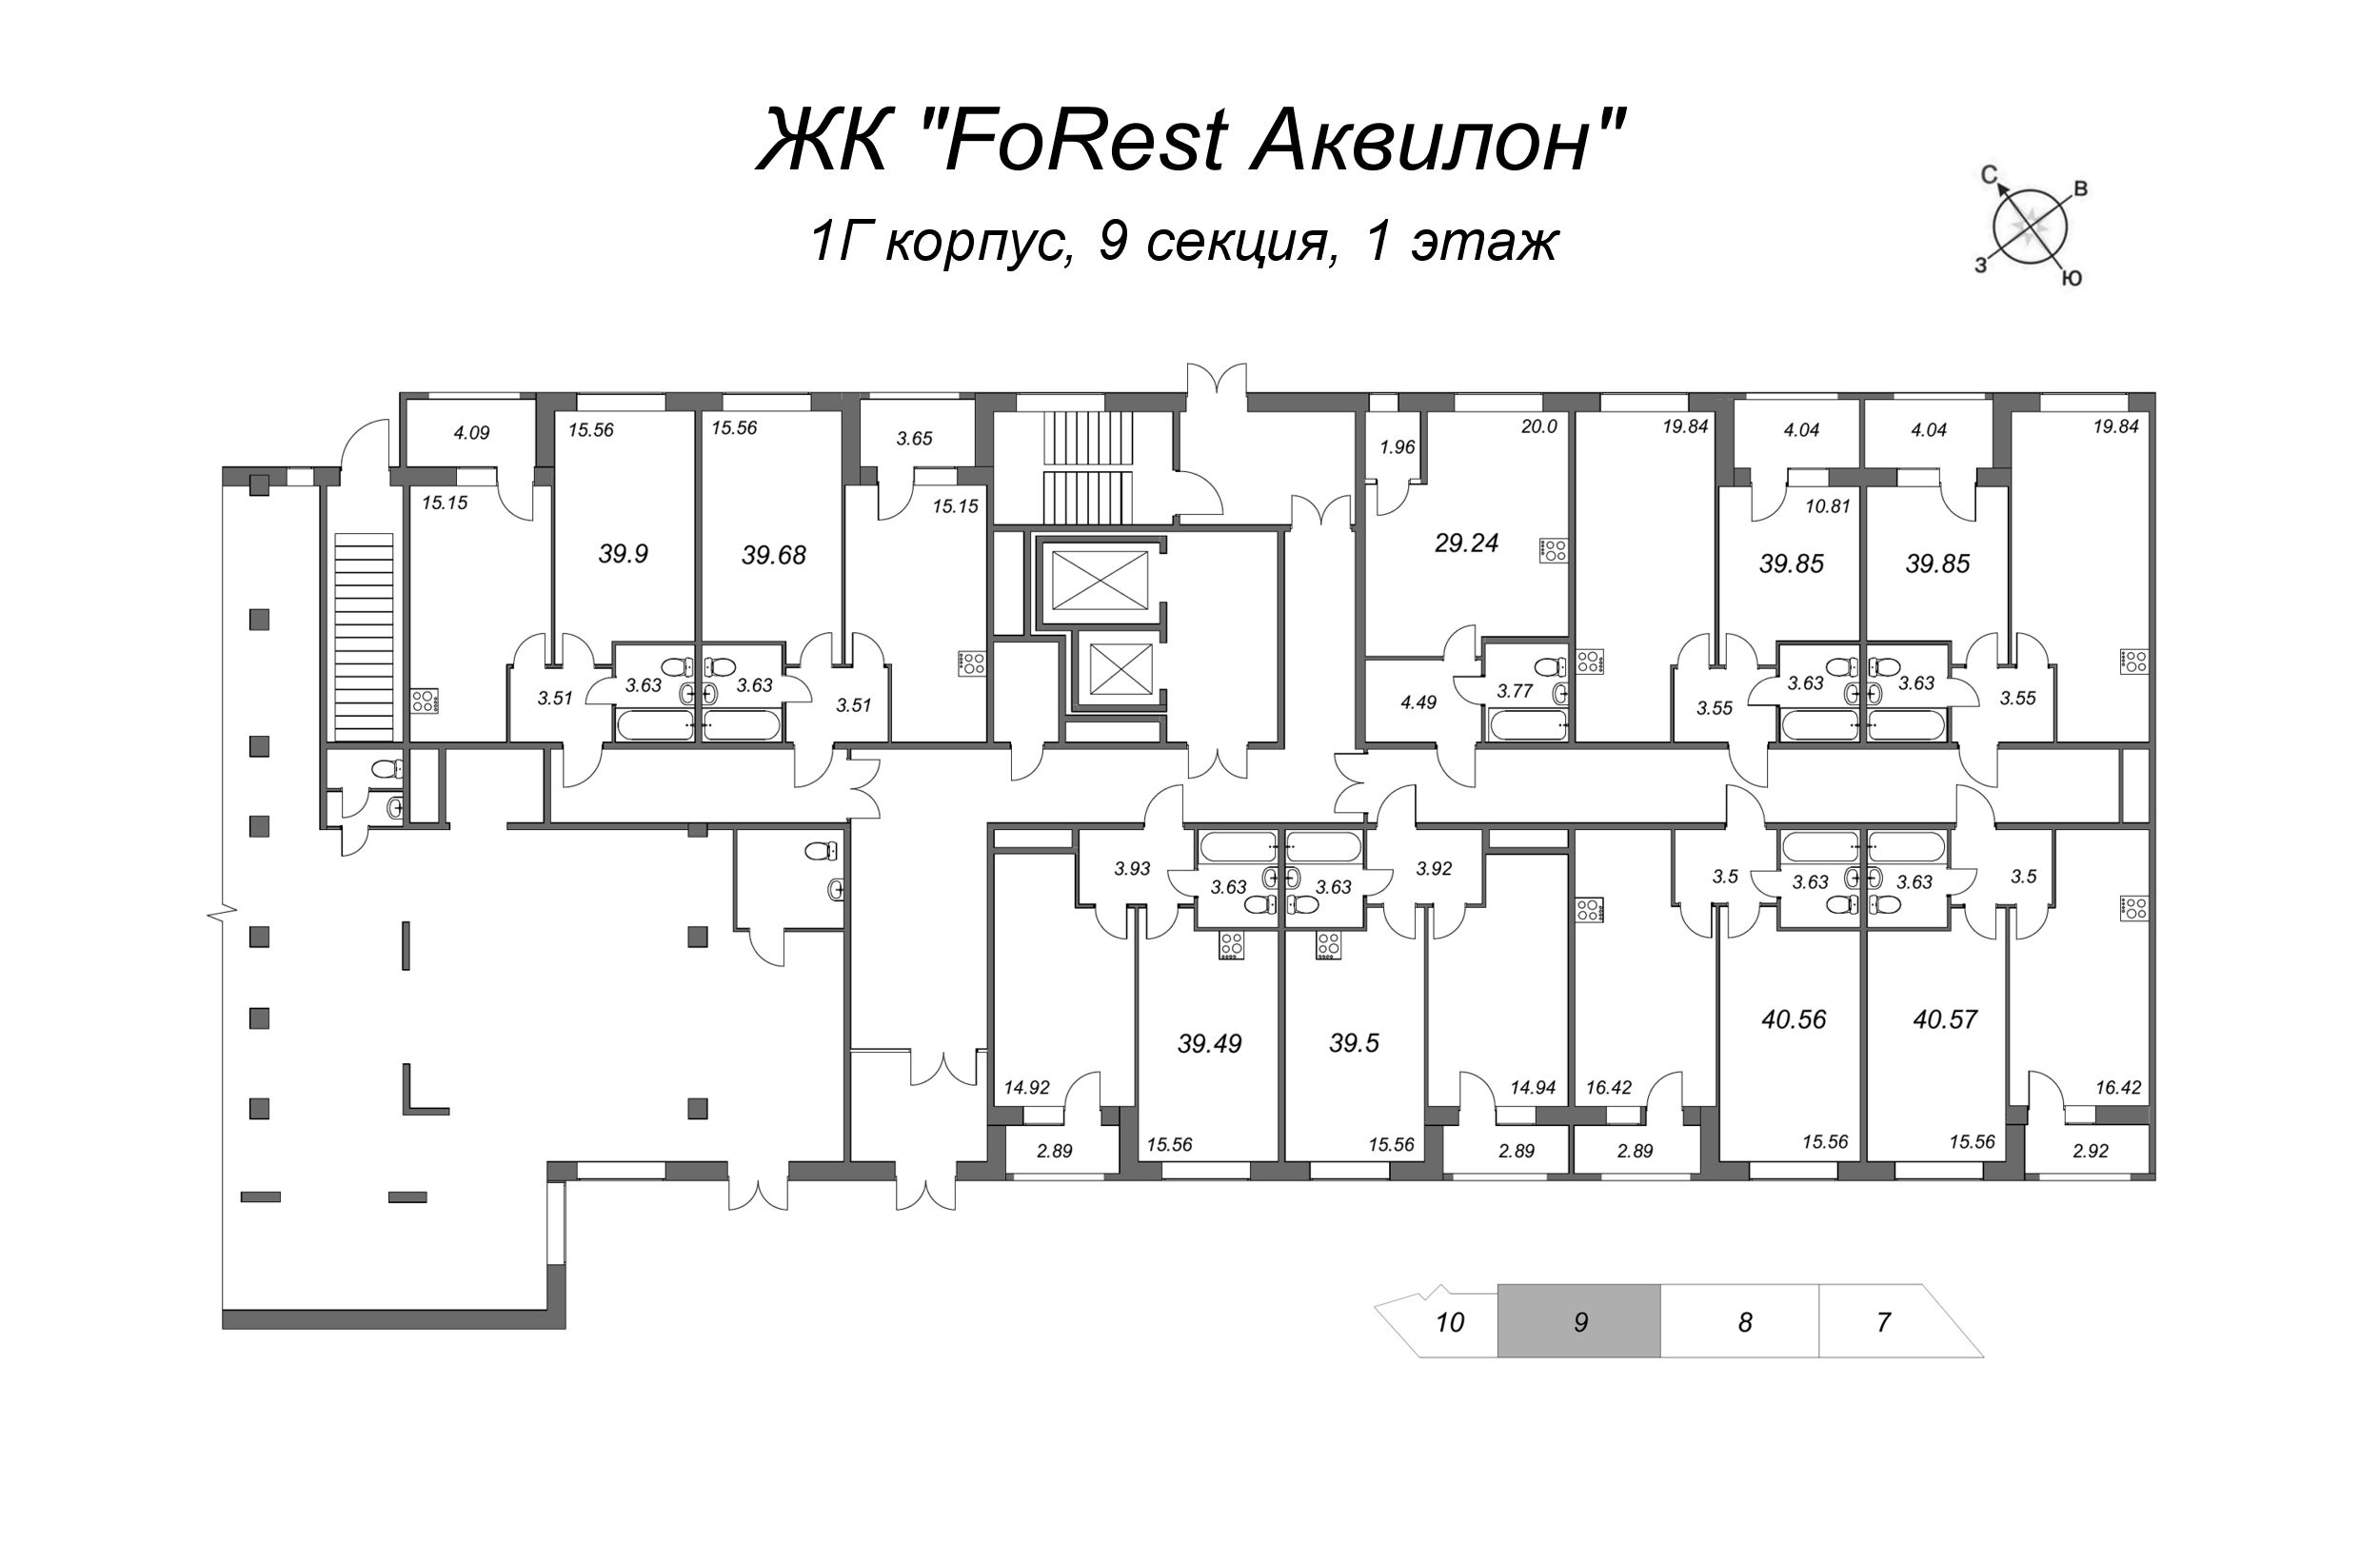 2-комнатная (Евро) квартира, 39 м² в ЖК "FoRest Аквилон" - планировка этажа